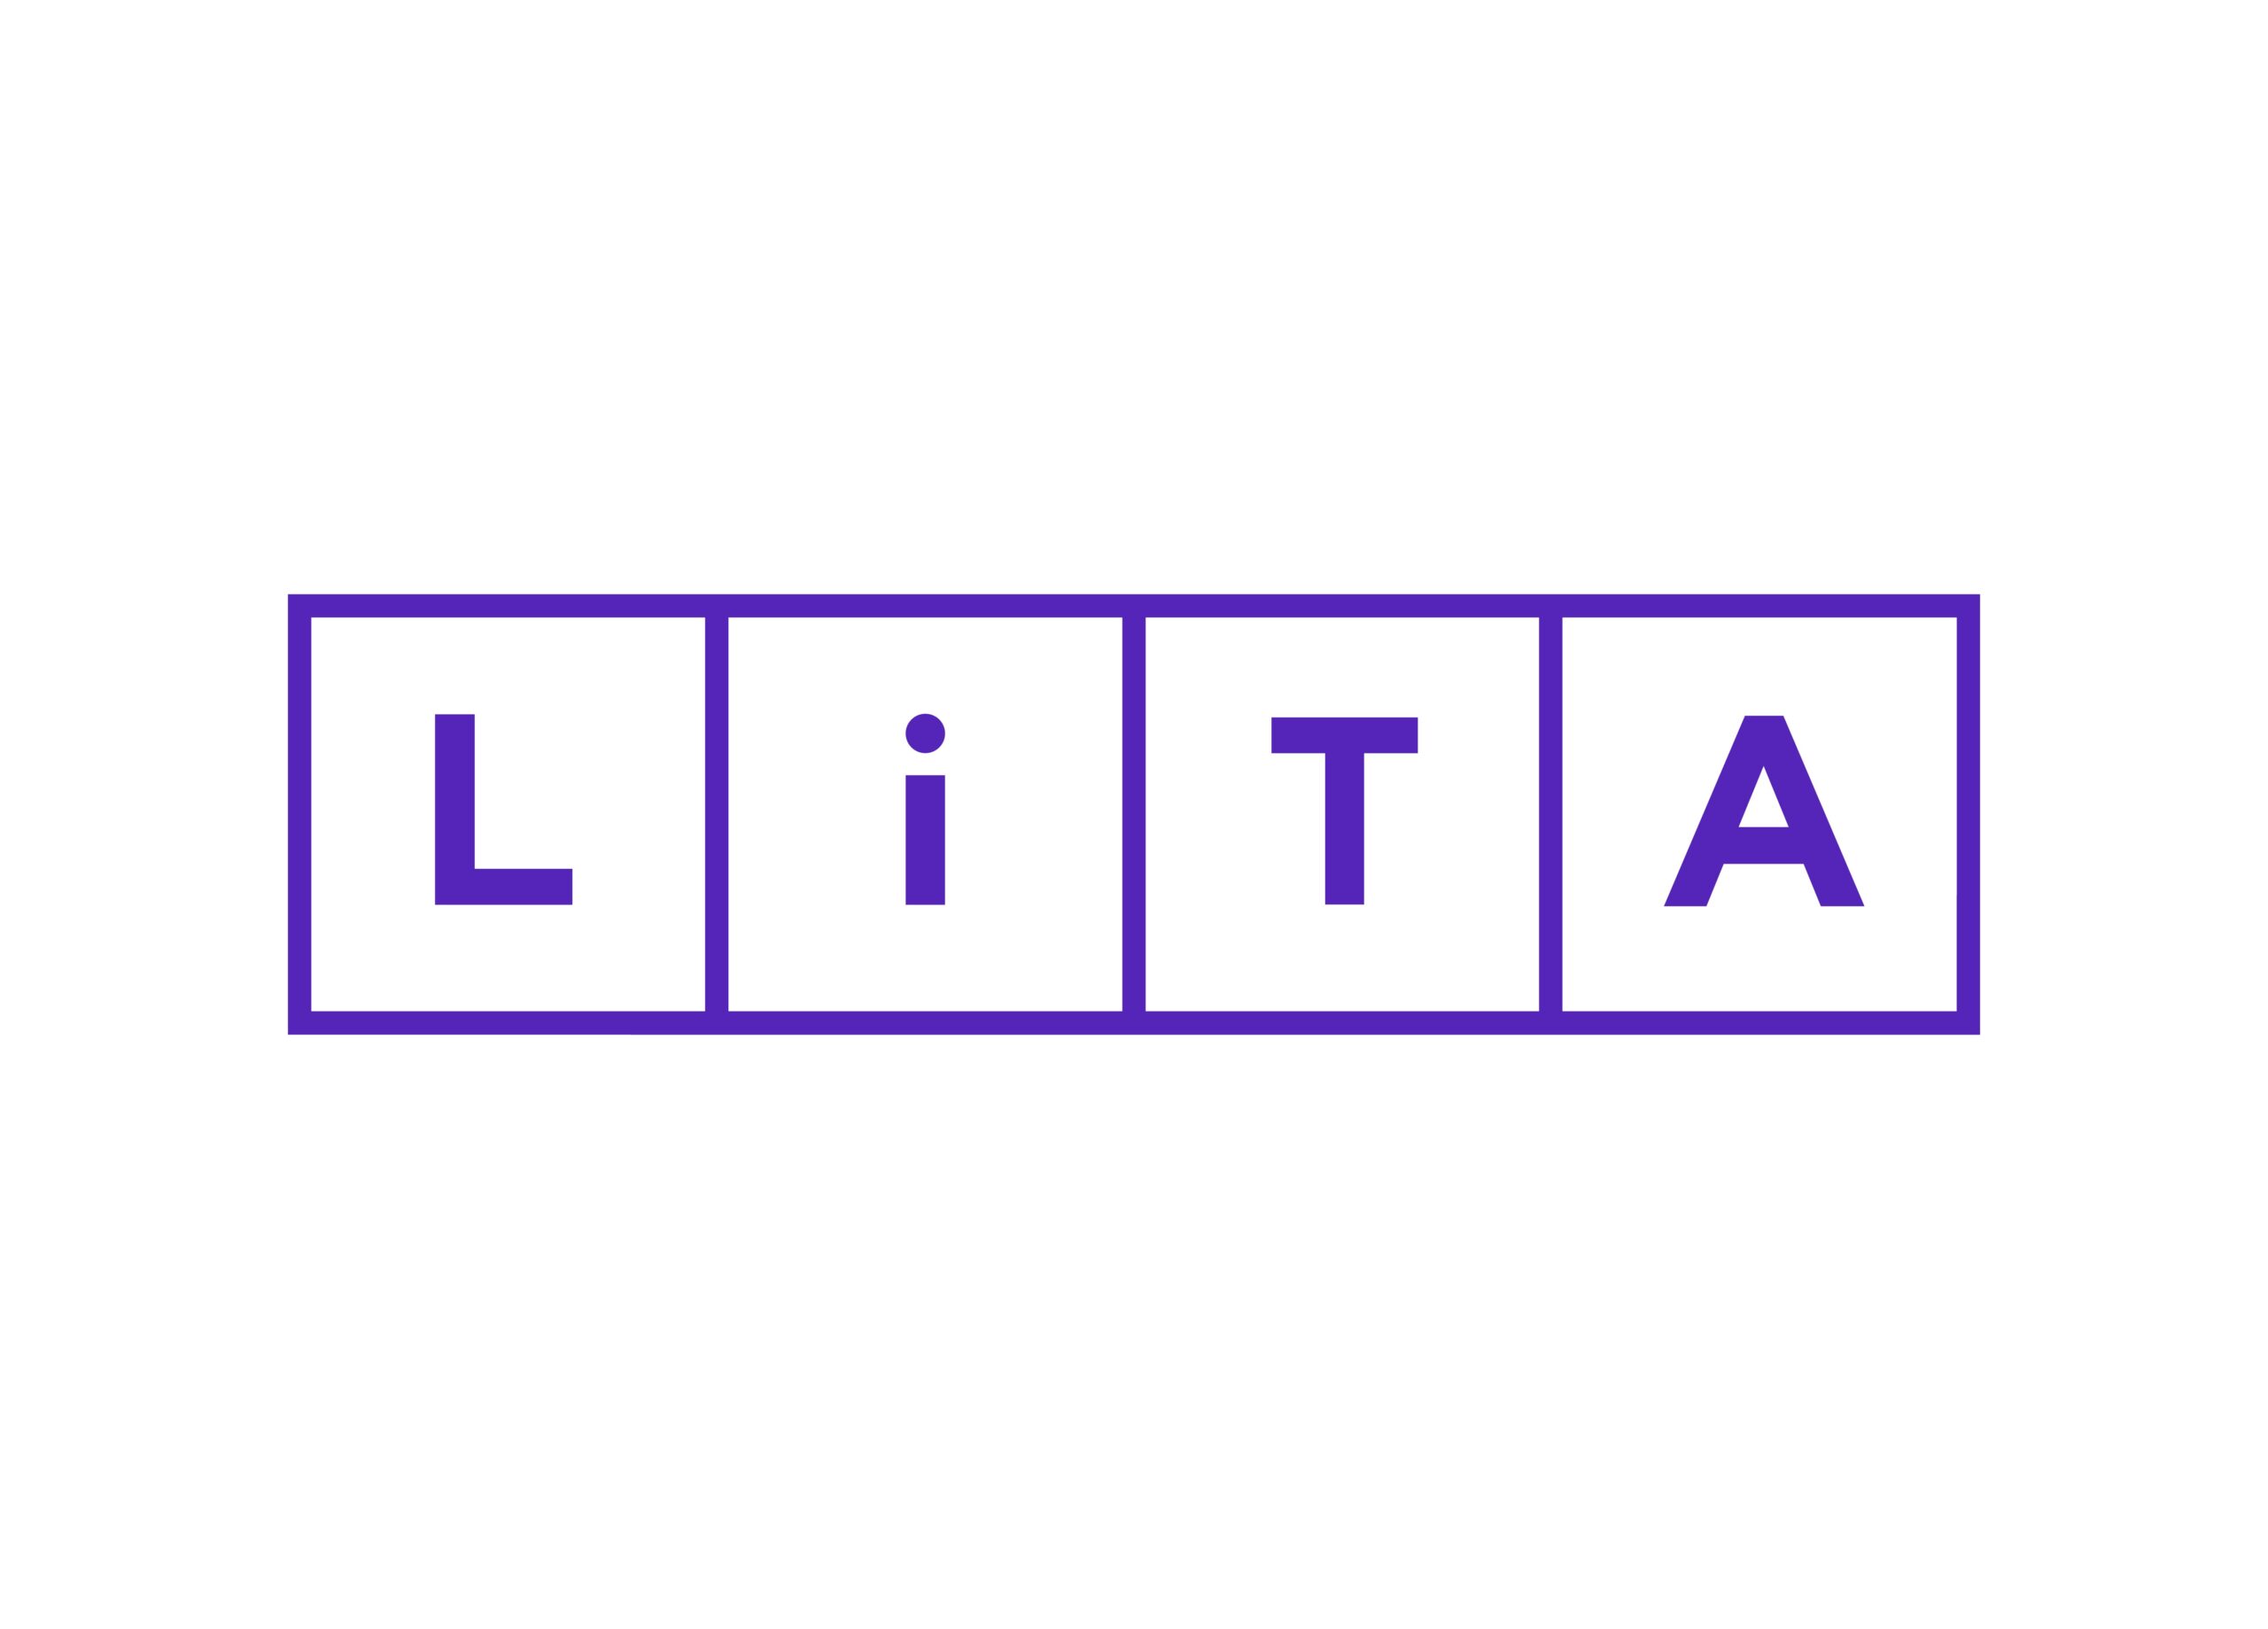 Logo LITA